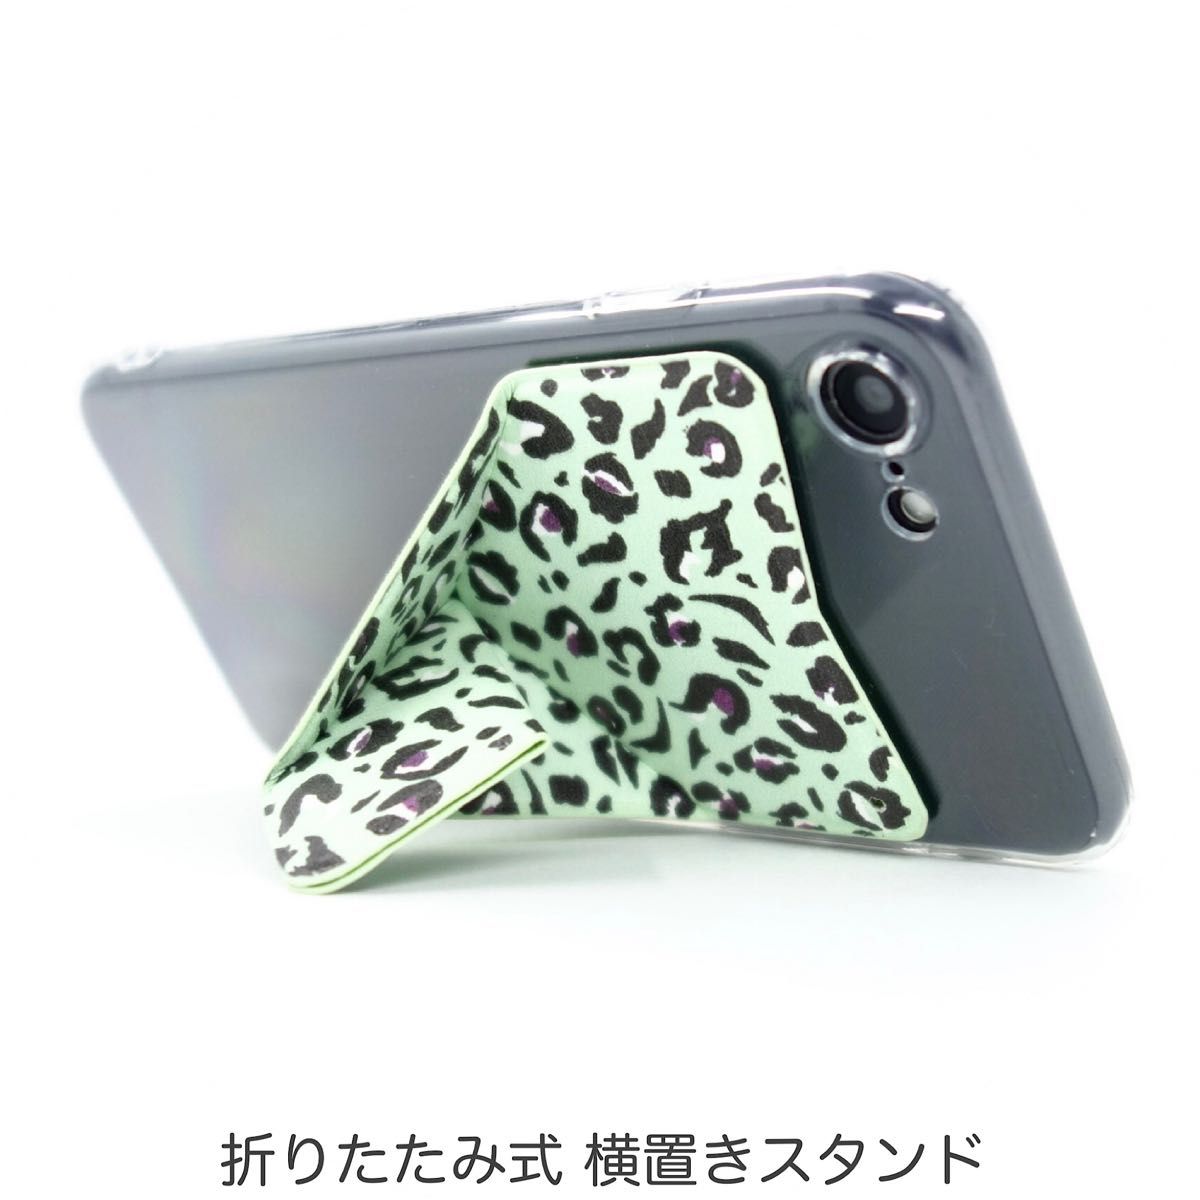 iPhone ケース SE3 SE2 8 7 スマホスタンド スマホグリップ マグネット内蔵 ワイヤレス充電OK グリーンの豹柄